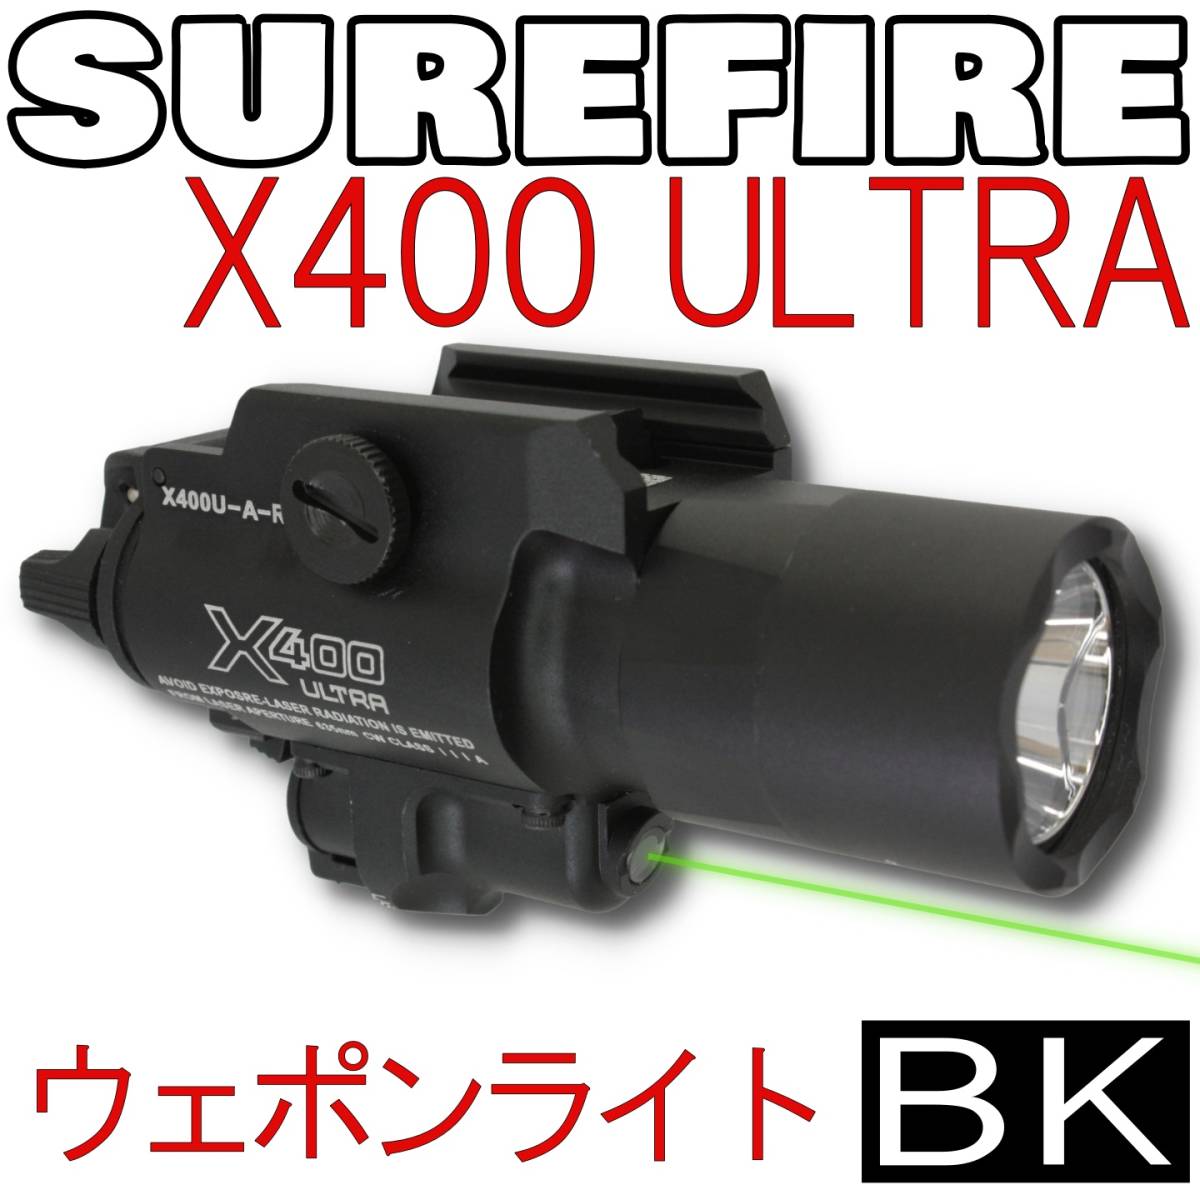 ございまし SUREFIRE タクティカルライト X300 ULTRA きます